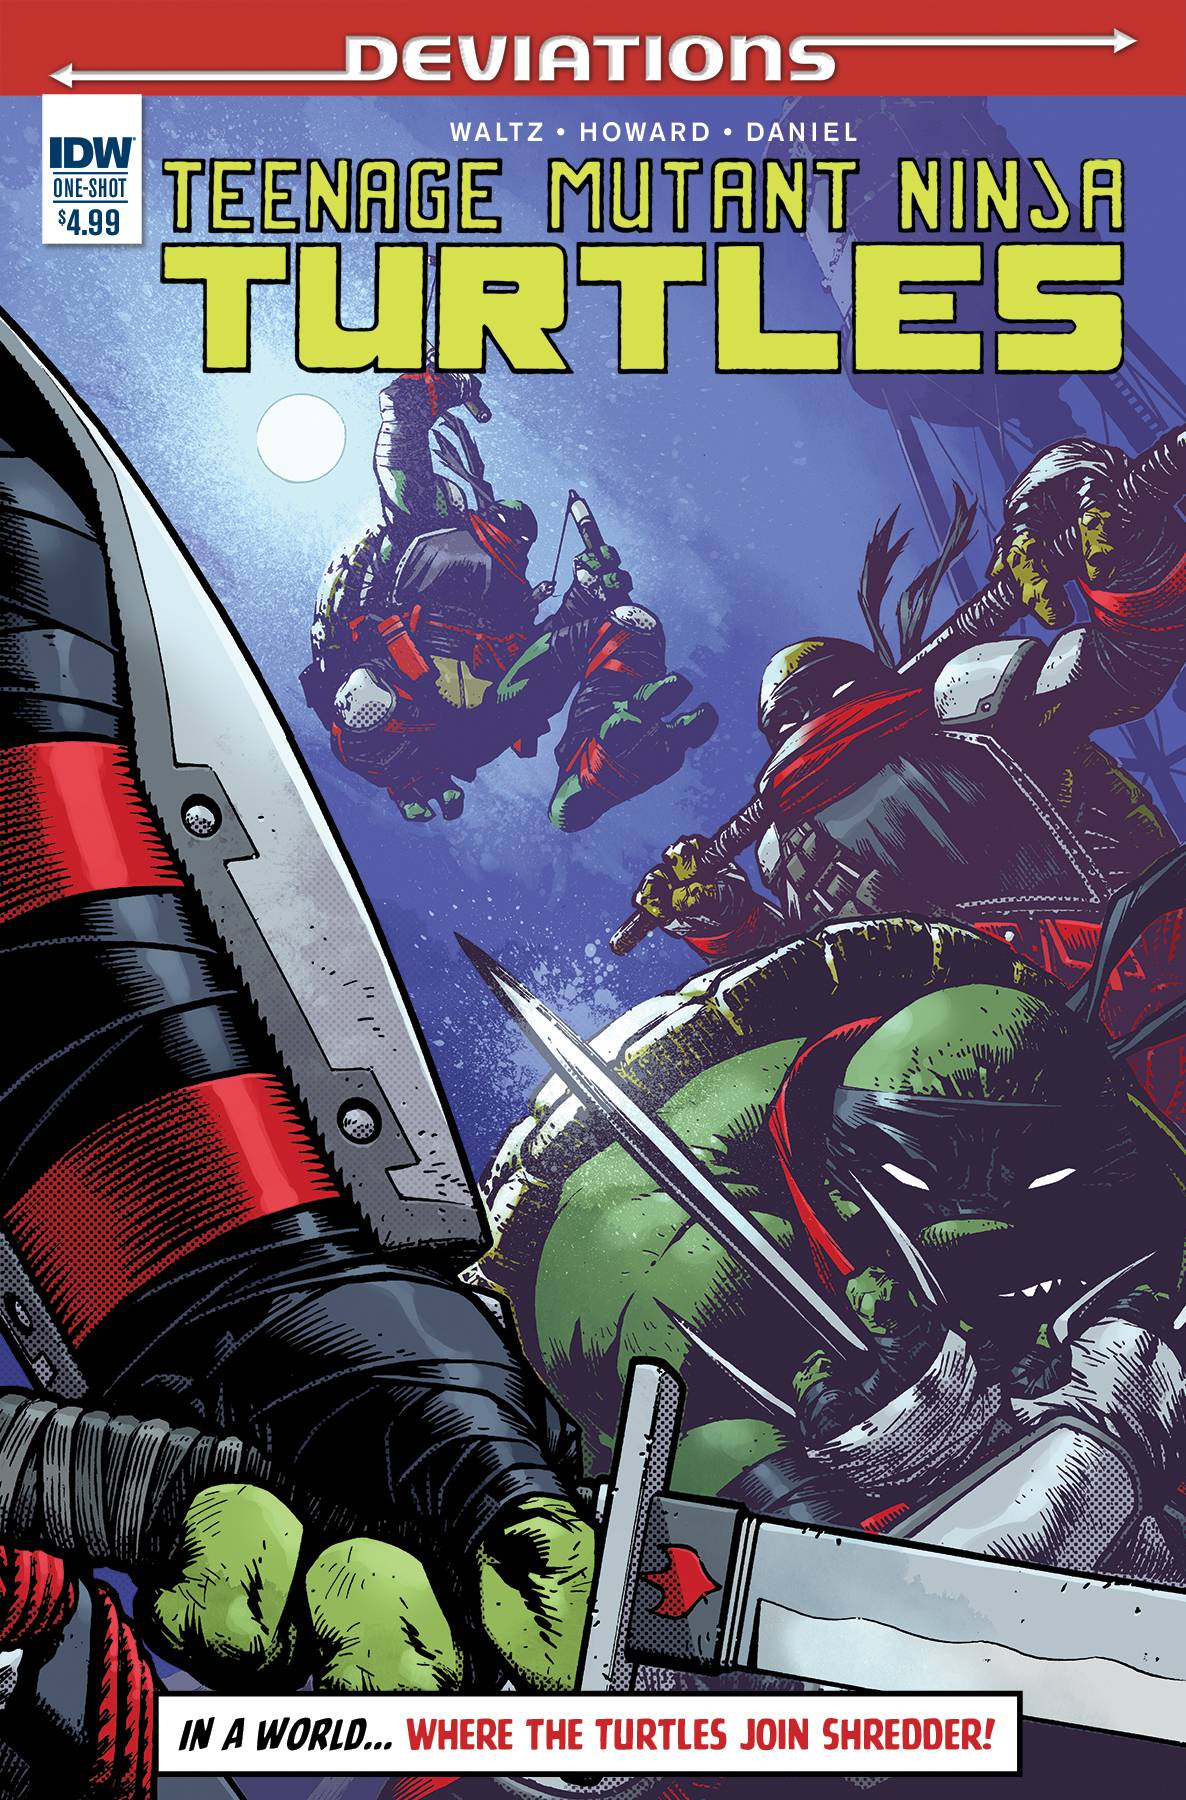 Teenage Mutant Ninja Turtles Deviations #1 (One Shot)